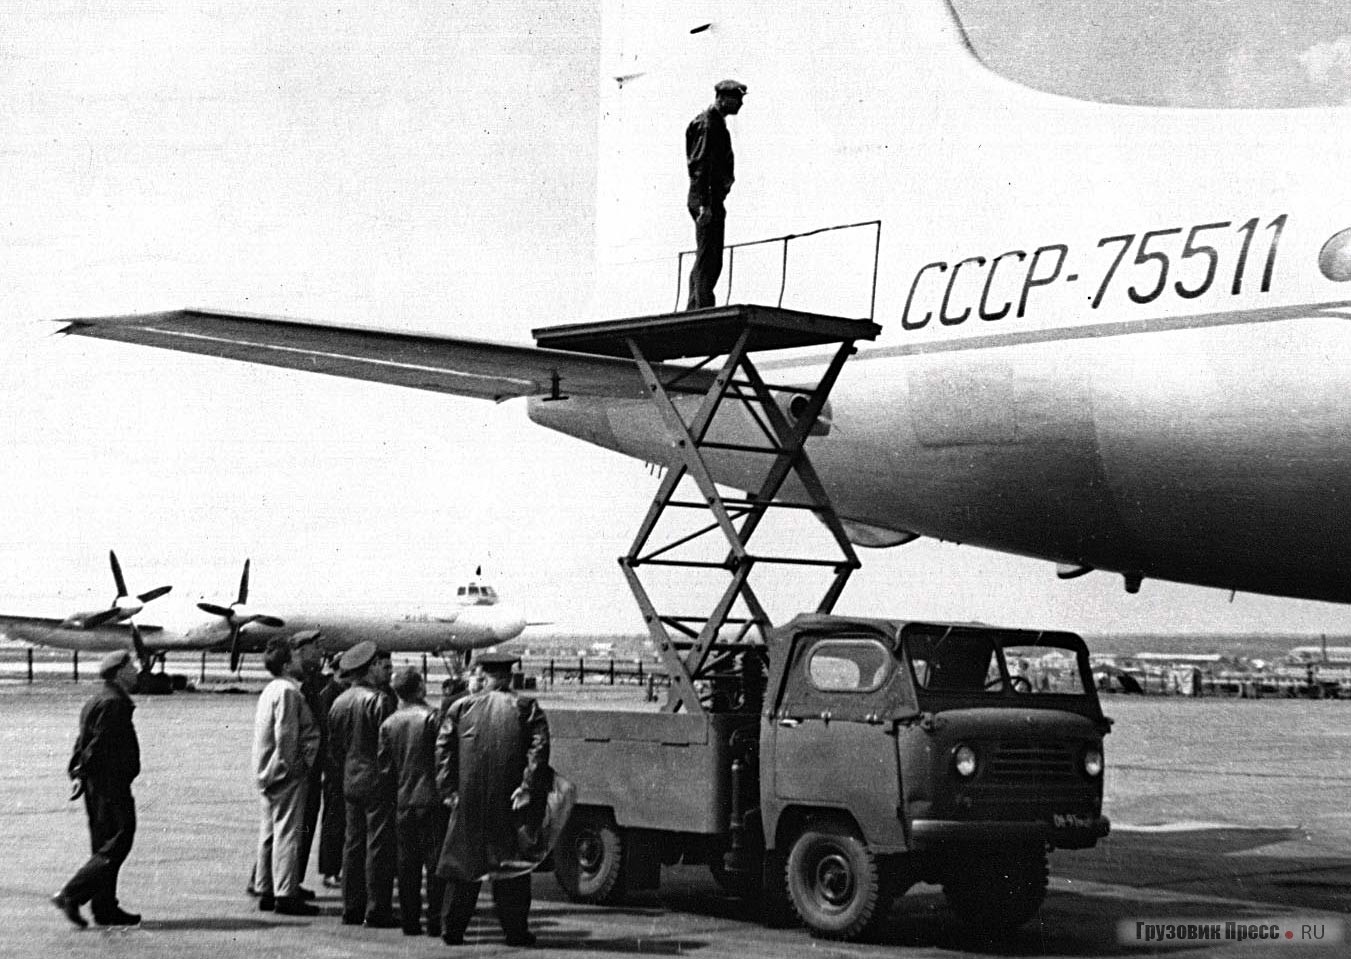 Авиационный подъемник А-64 (1962 г.) на шасси УАЗ-450Д с тентованной (!) кабиной предназначался для транспортировки авиаоборудования и технологического обслуживания воздушных судов